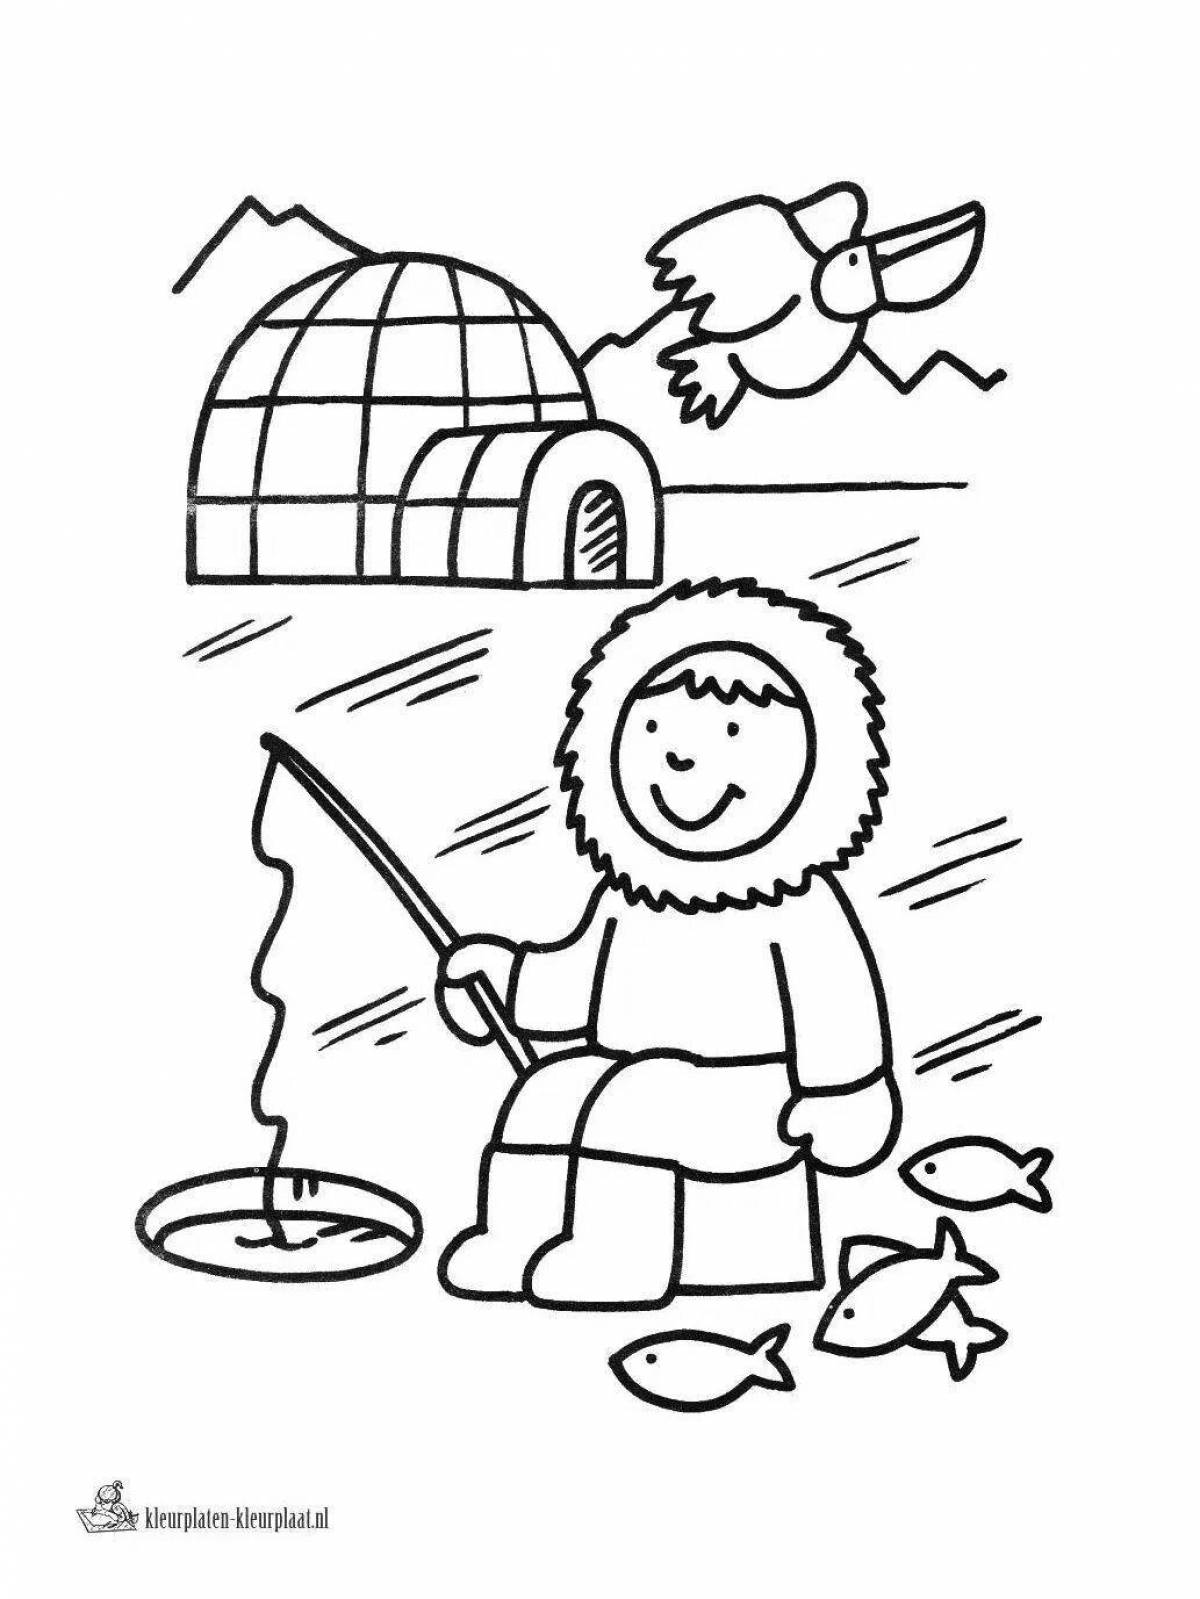 Fun eskimo coloring book for kids